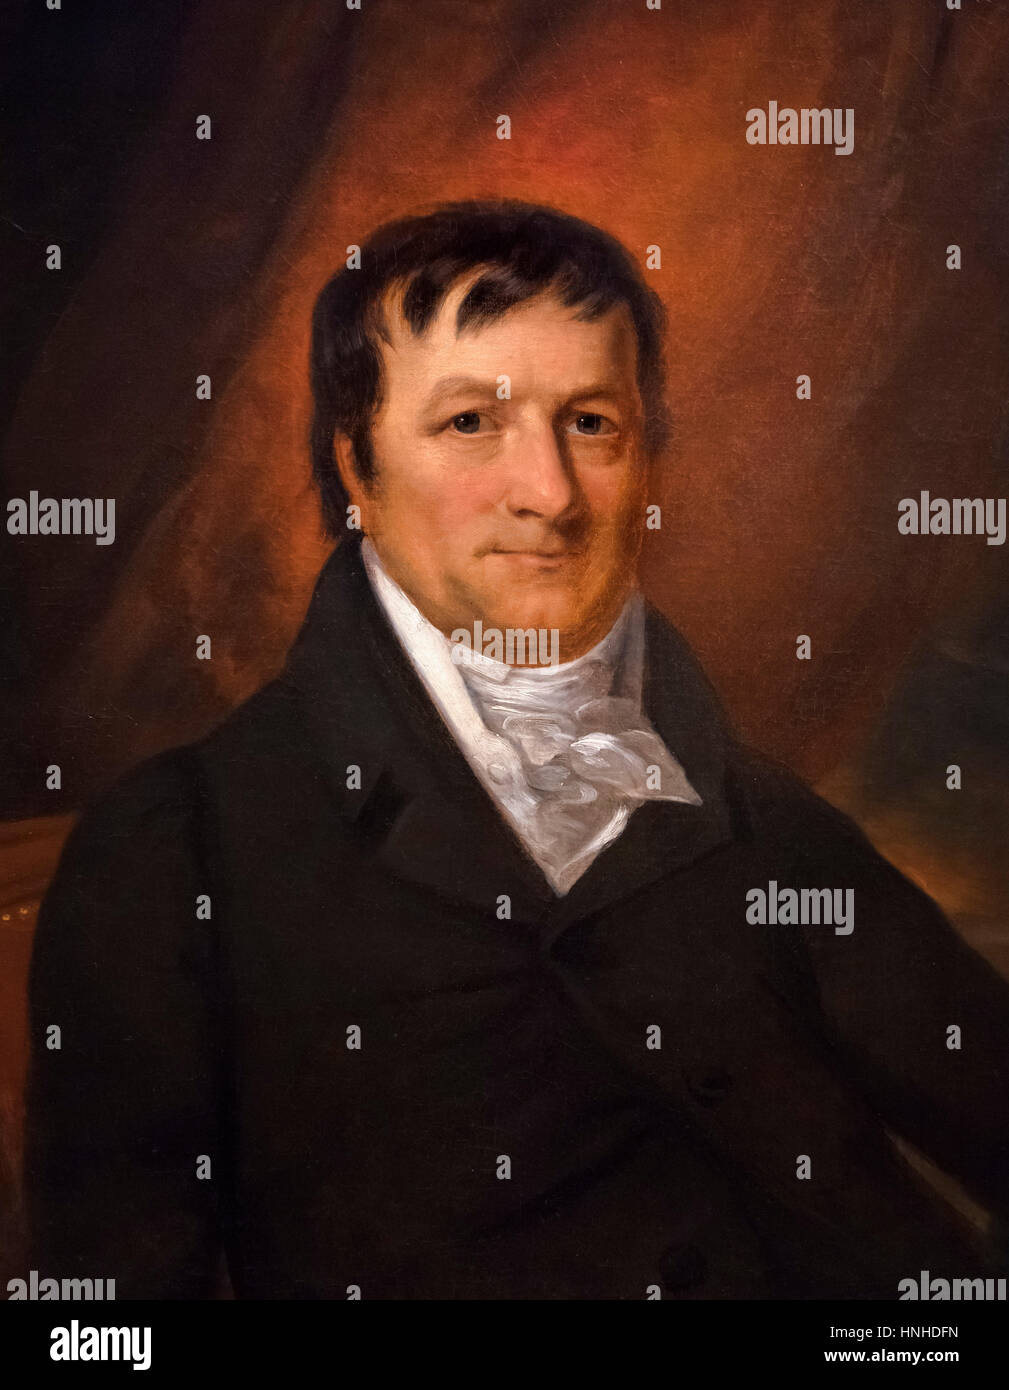 Astor (1763-1848), der deutschen geborene Geschäftsmann, der der erste Multi-Millionär in Amerika war. Portrait von John Wesley Jarvis, Öl auf Leinwand, c.1825. Stockfoto